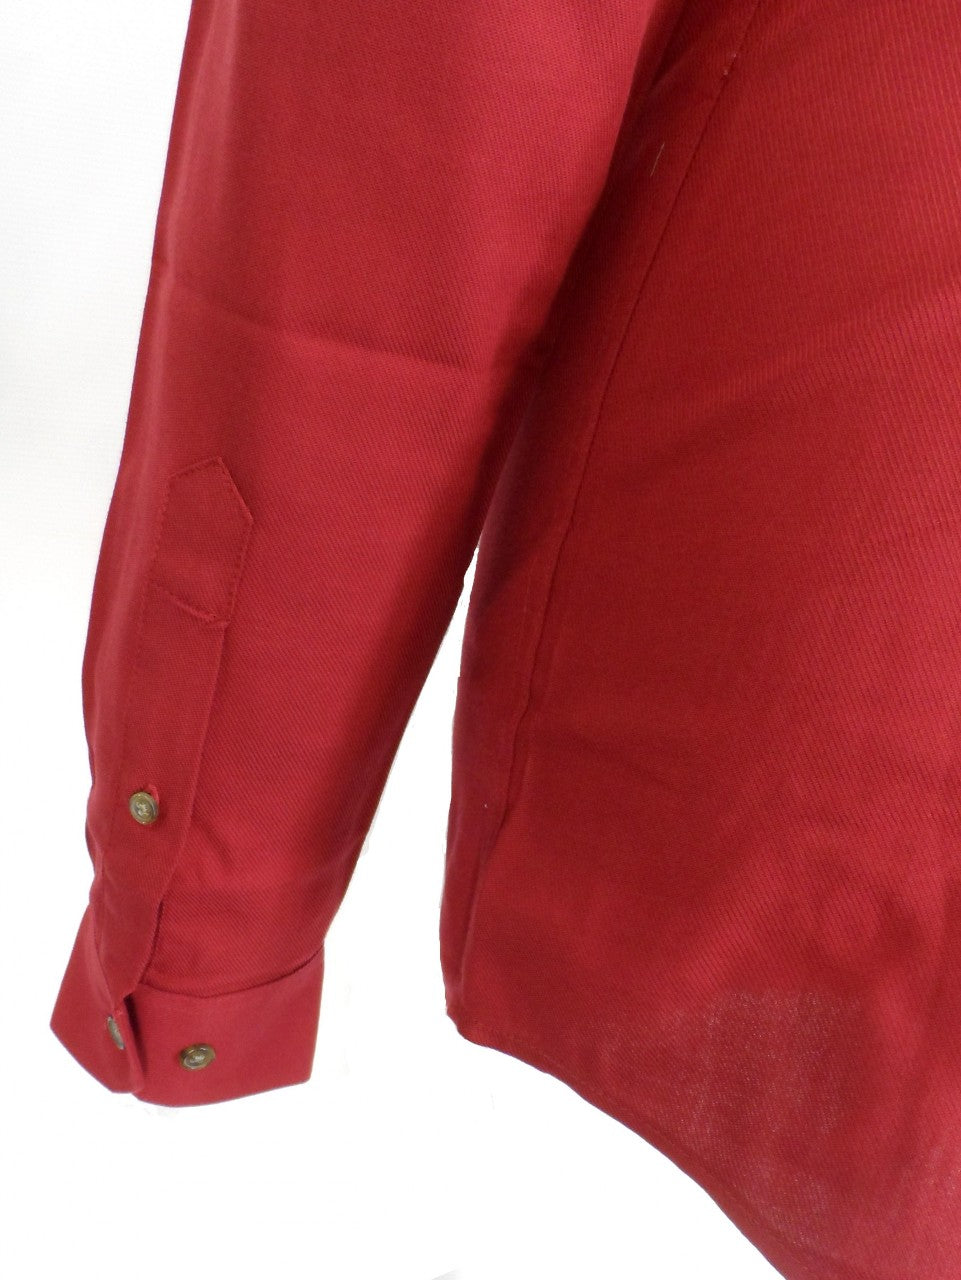 Chemises boutonnées rétro mod à manches longues en coton Selby marron Farah